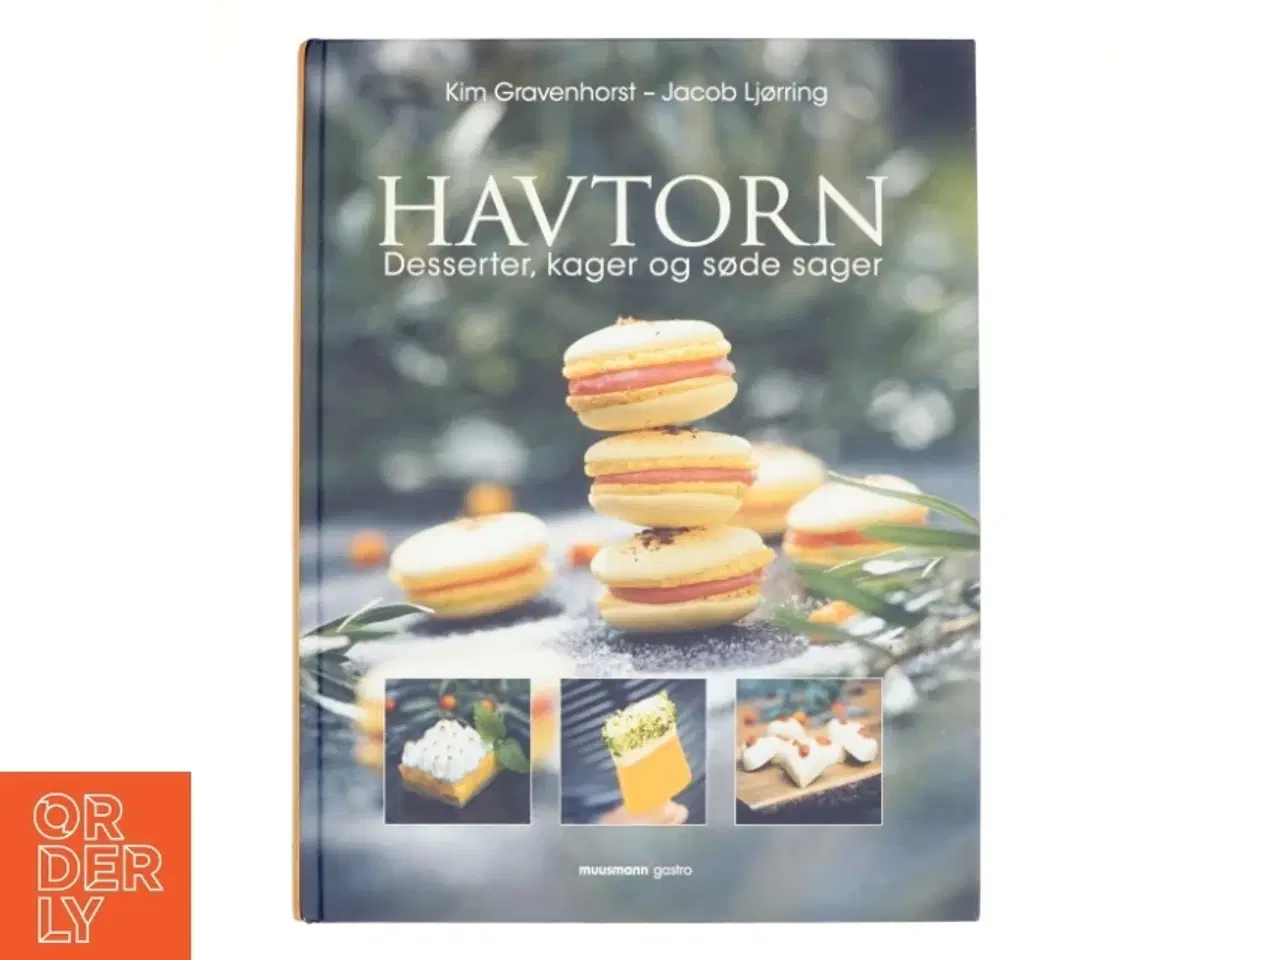 Billede 1 - Havtorn : desserter, kager og søde sager (Desserter, kager og søde sager) af Kim Gravenhorst (Bog)